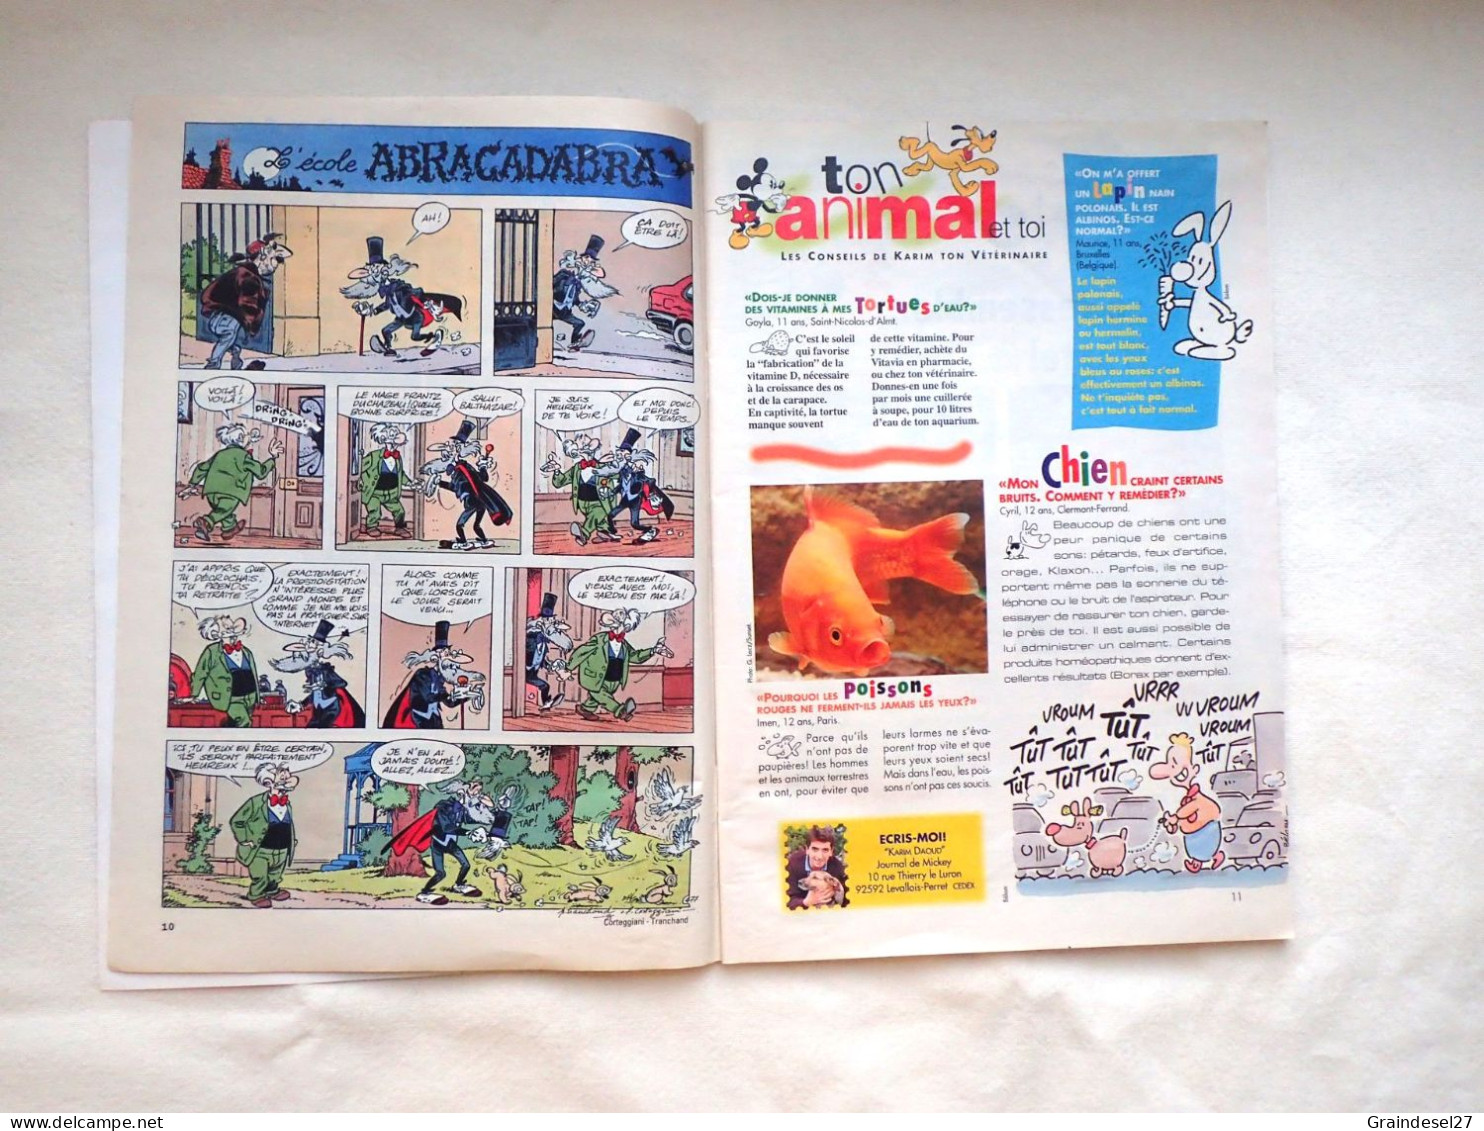 Le journal de Mickey lot de 2 magazines de 1996 n° 2282 et 2316